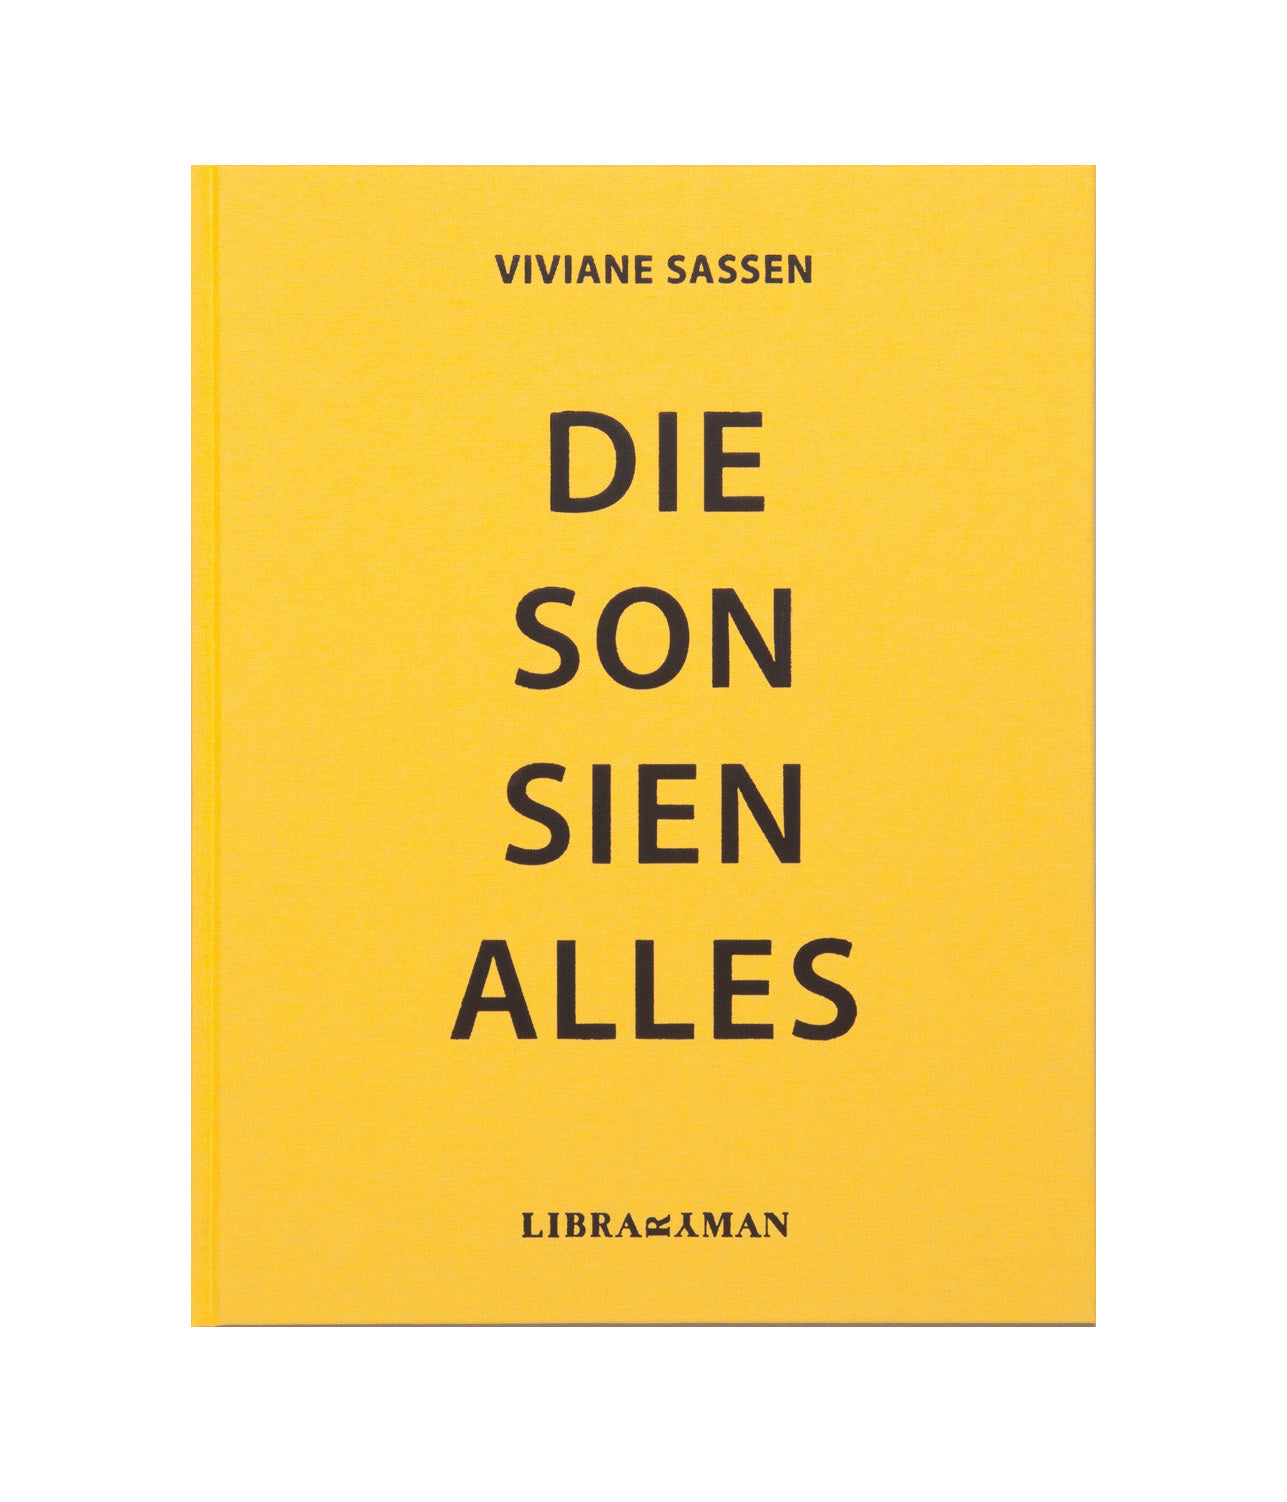 Viviane Sassen Pikin Slee Prestel second hand book Free shipping